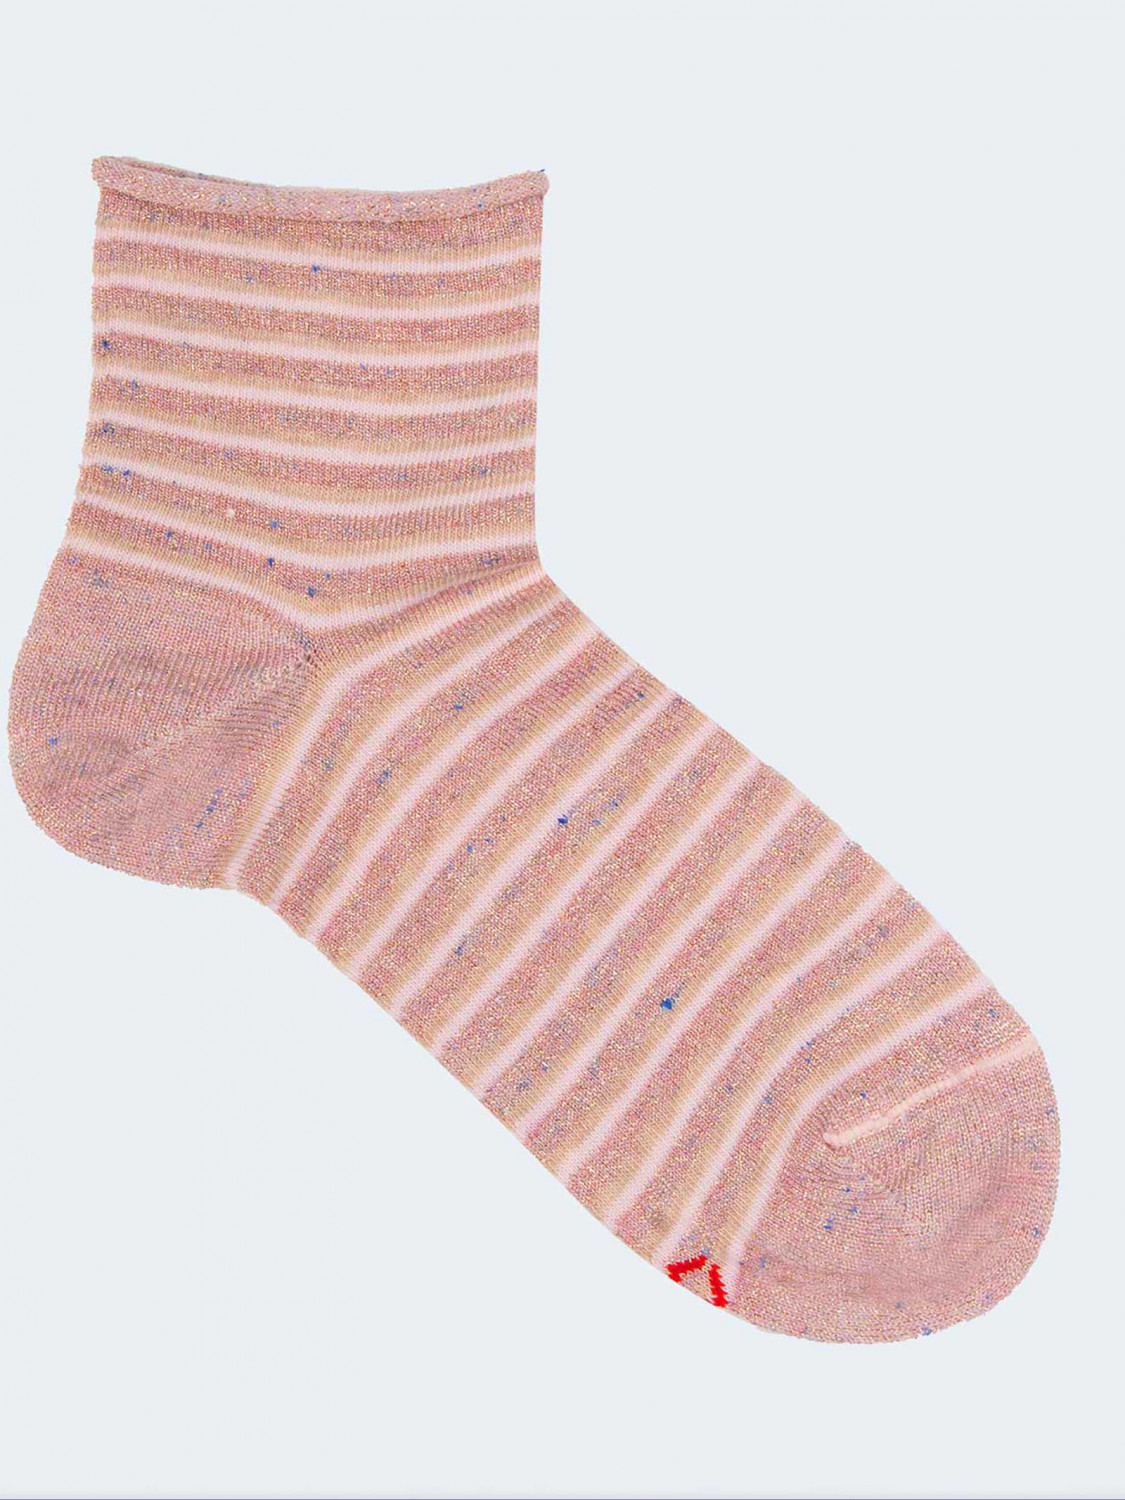 Short striped socks for girls